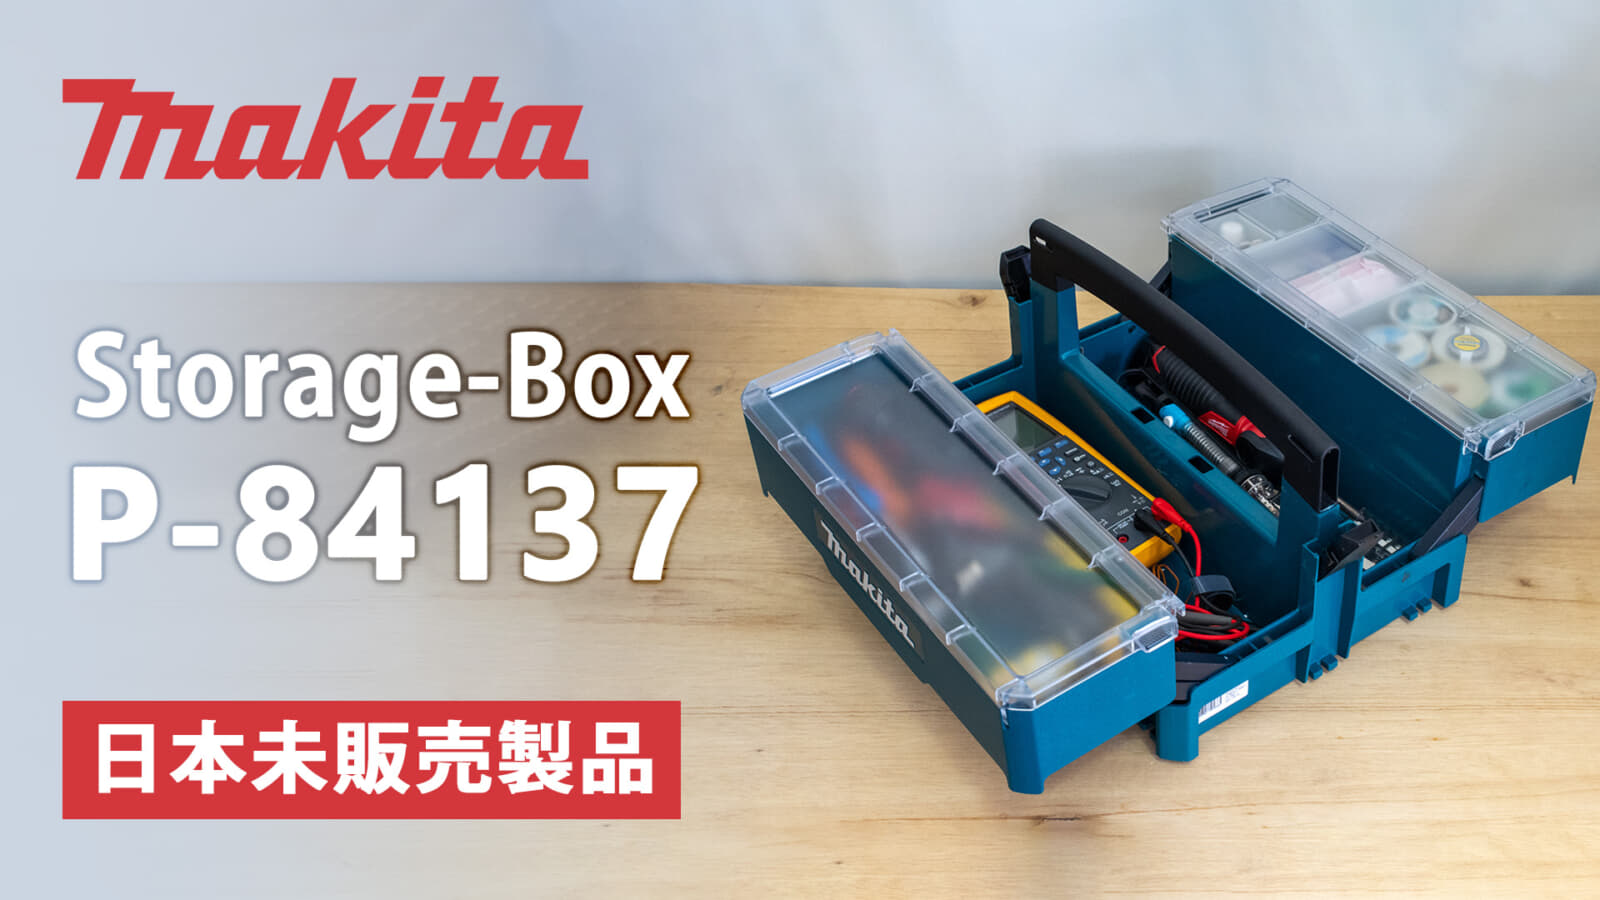 マキタ マックパックシリーズ Storage-Box(P-84137)レビュー【海外マキタ製品】